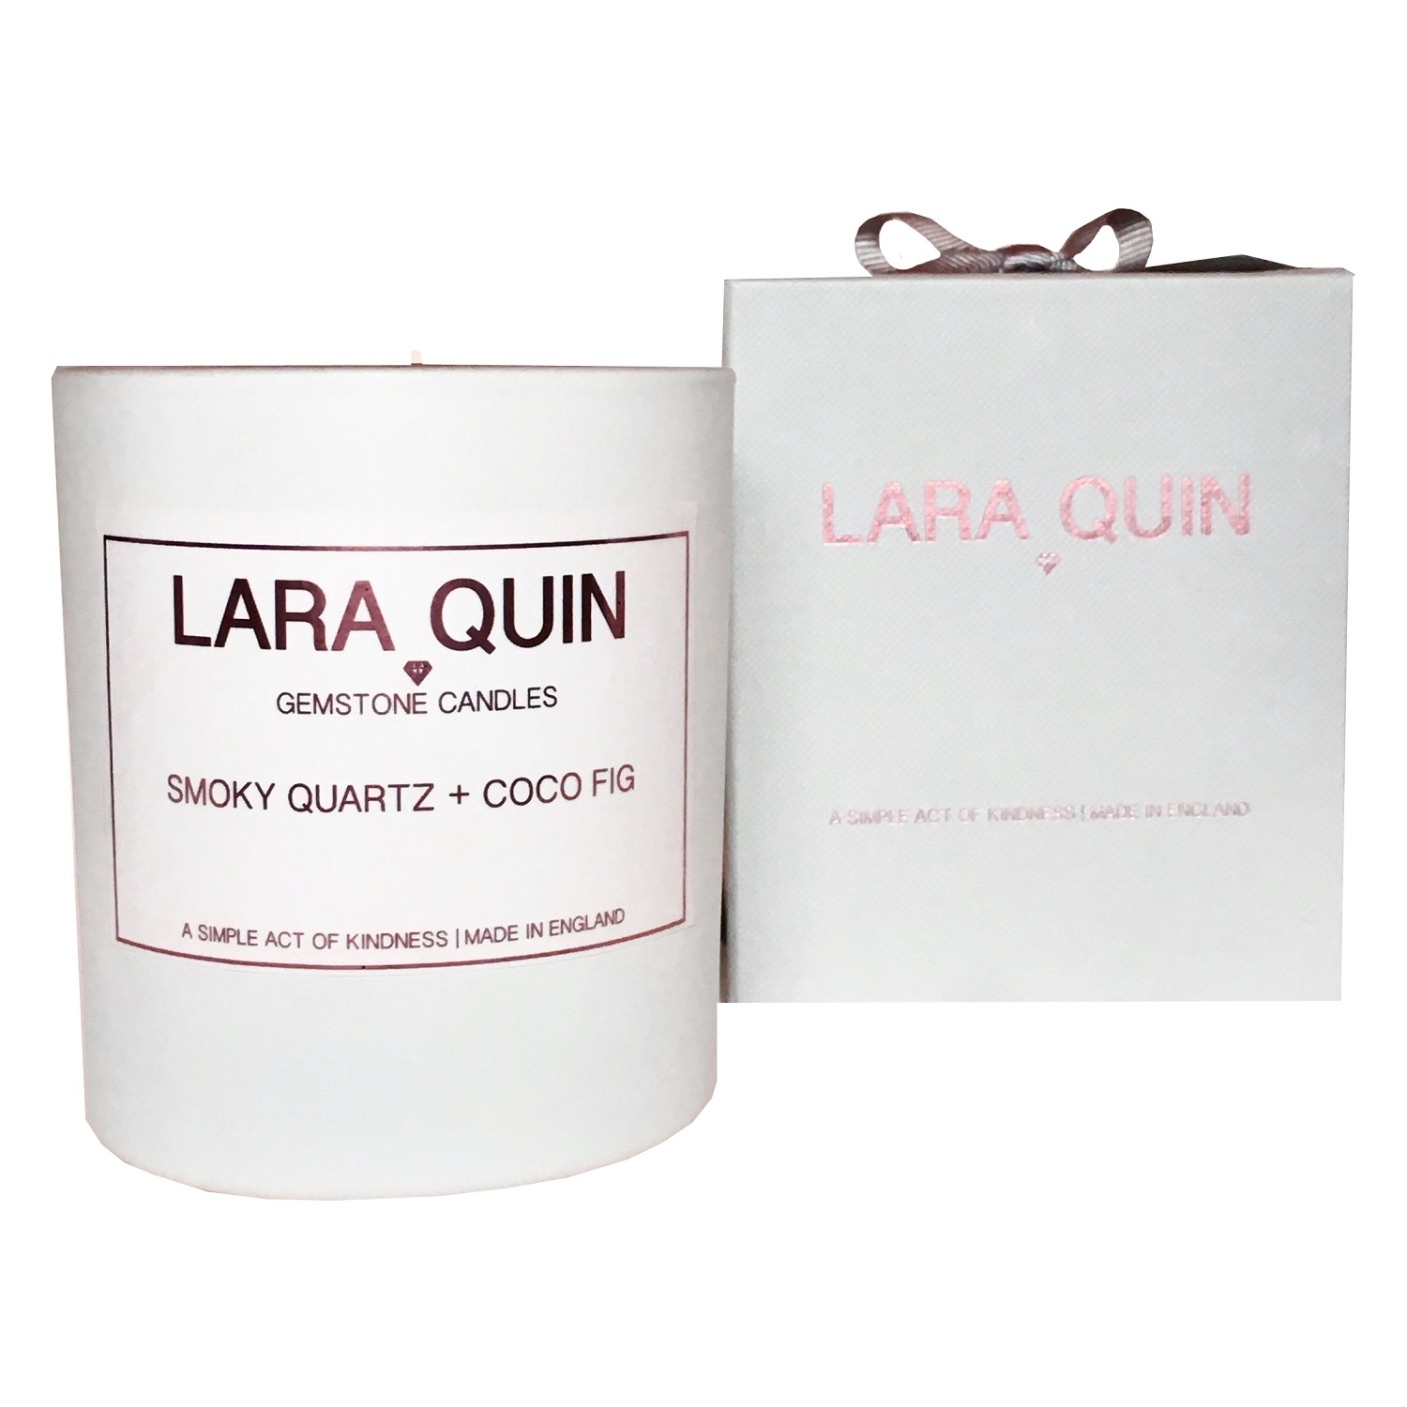 Lara Quin Smoky Quartz & Coco Fig Candle 220g